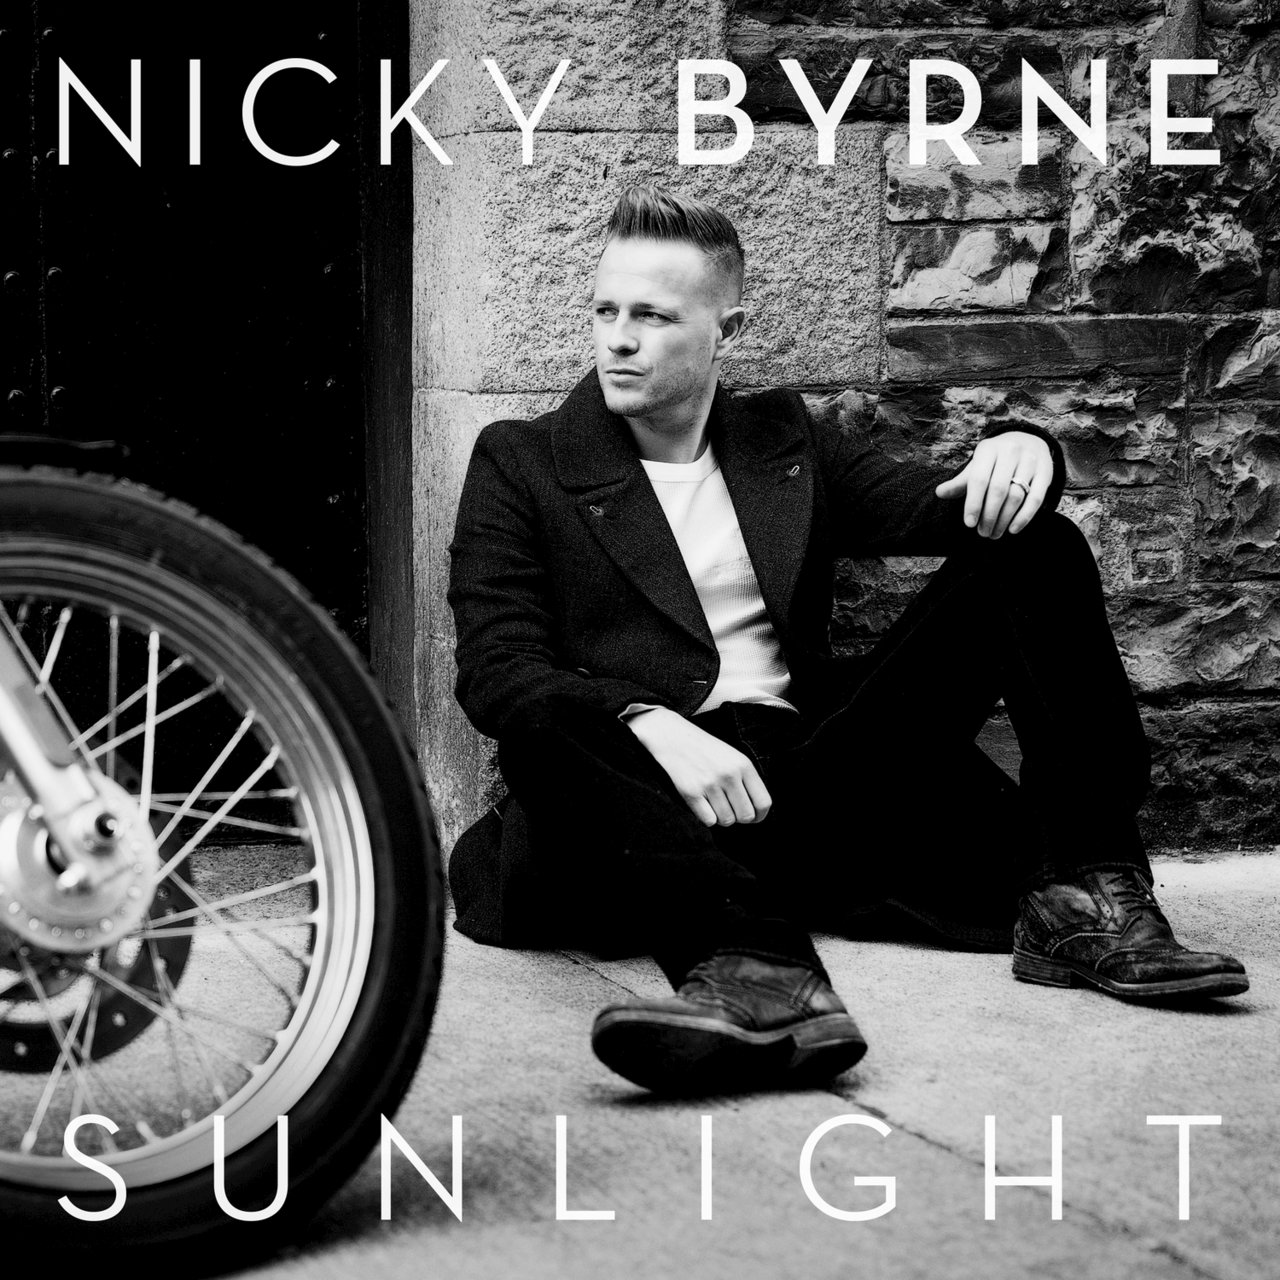 Nicky Byrne Sunlight cover artwork